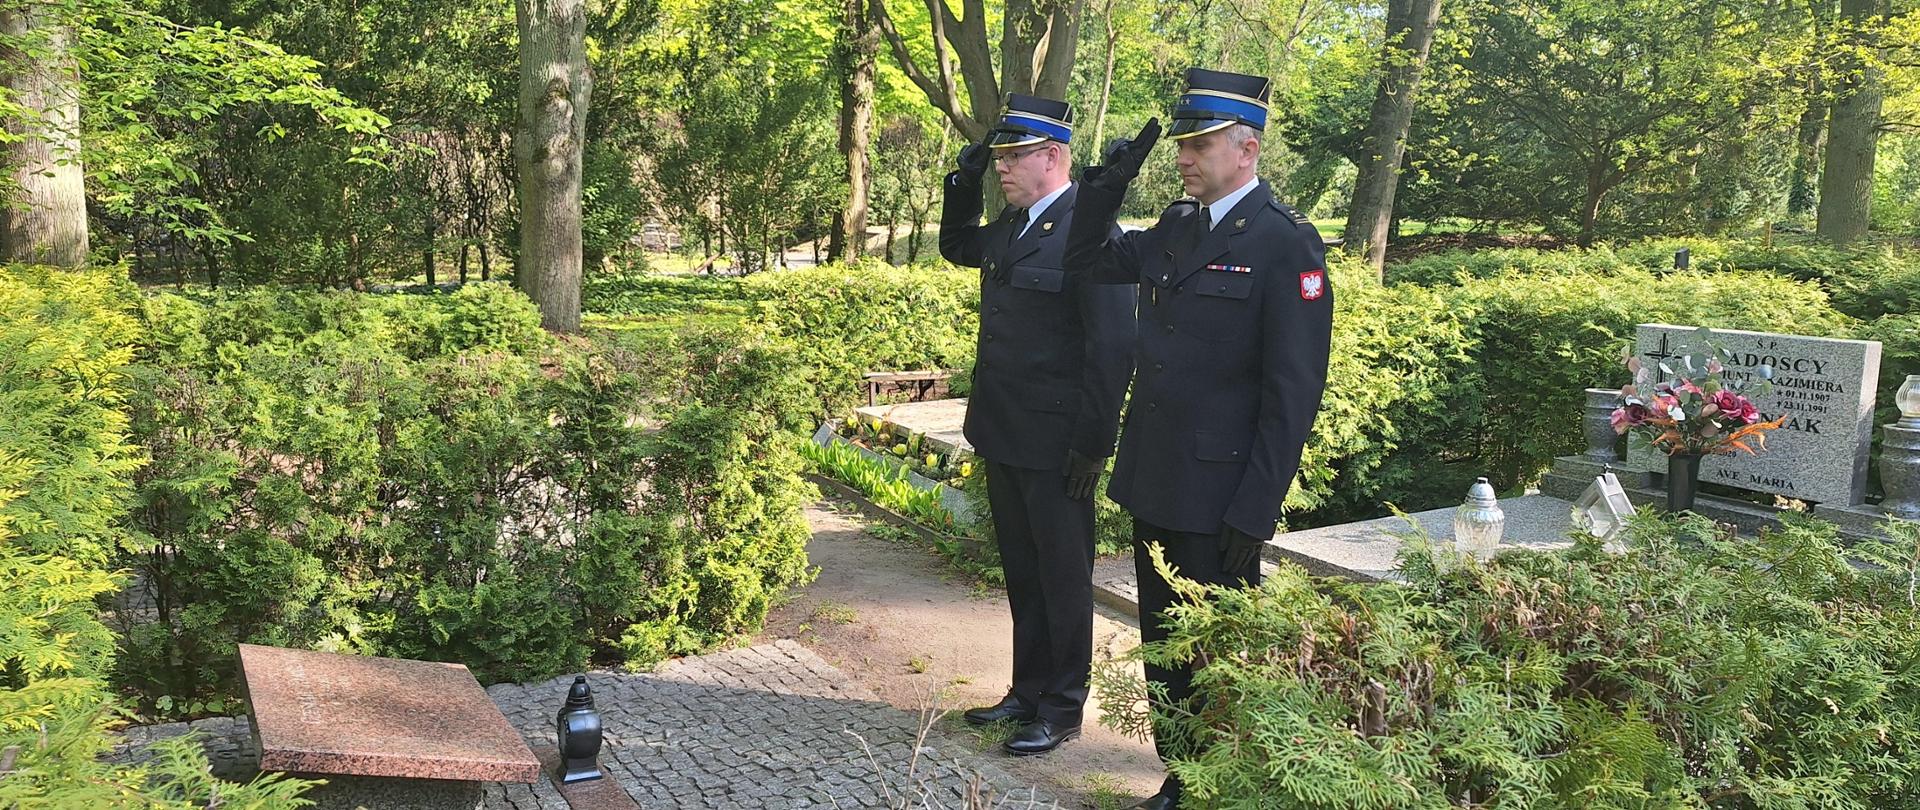 W Dniu Strażaka oddano hołd zmarłym strażakom na Cmentarzu Centralnym w Szczecinie